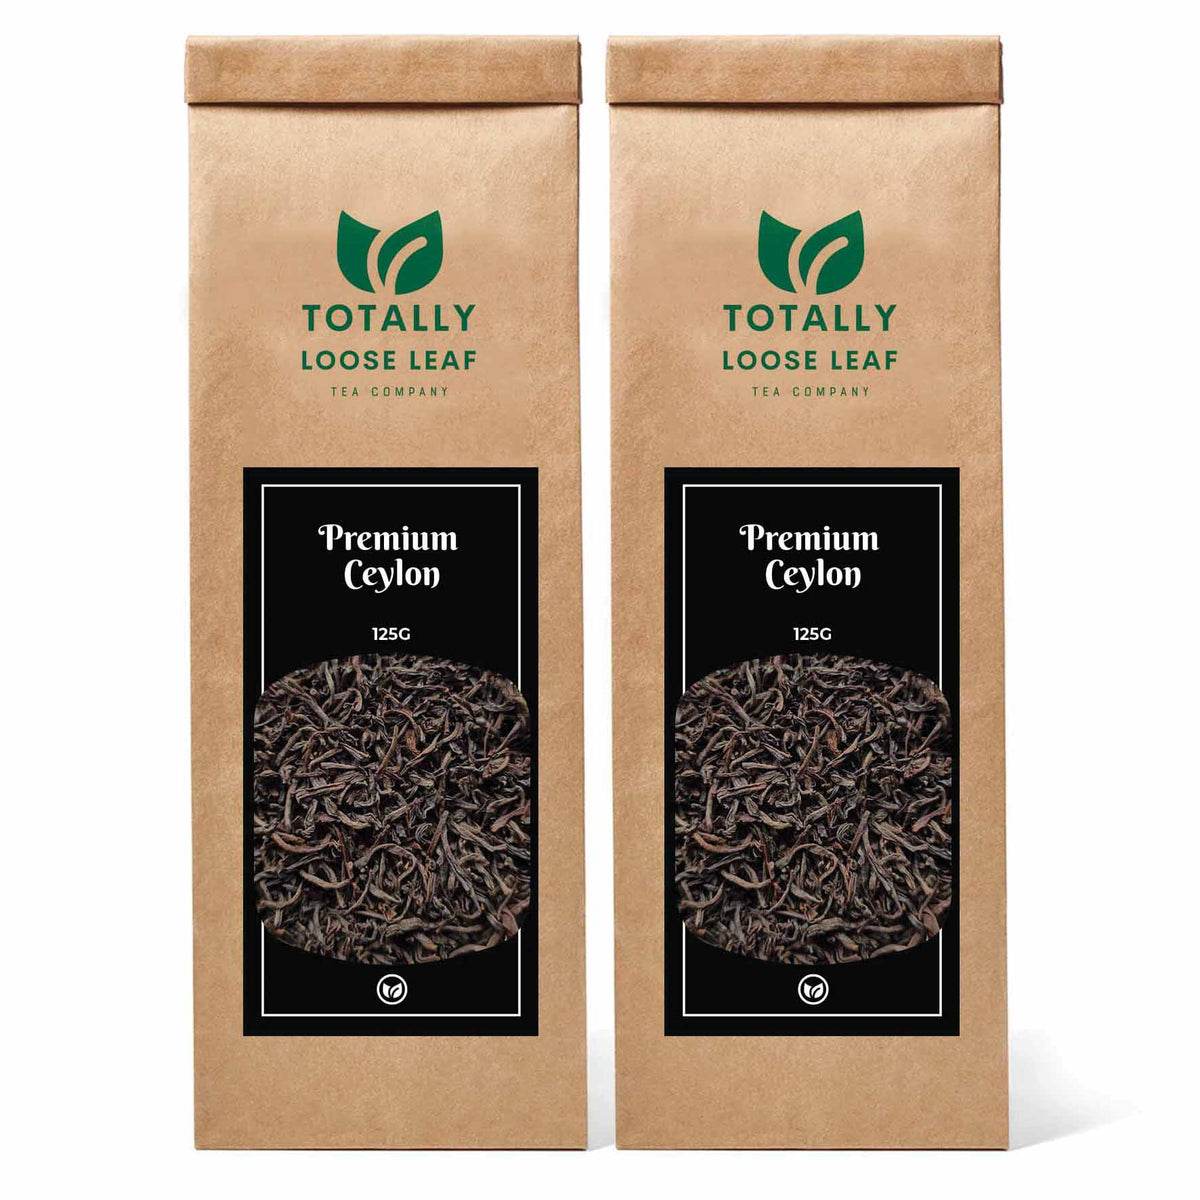 Premium Ceylon Black Estate Loose Leaf Tea - two pouches